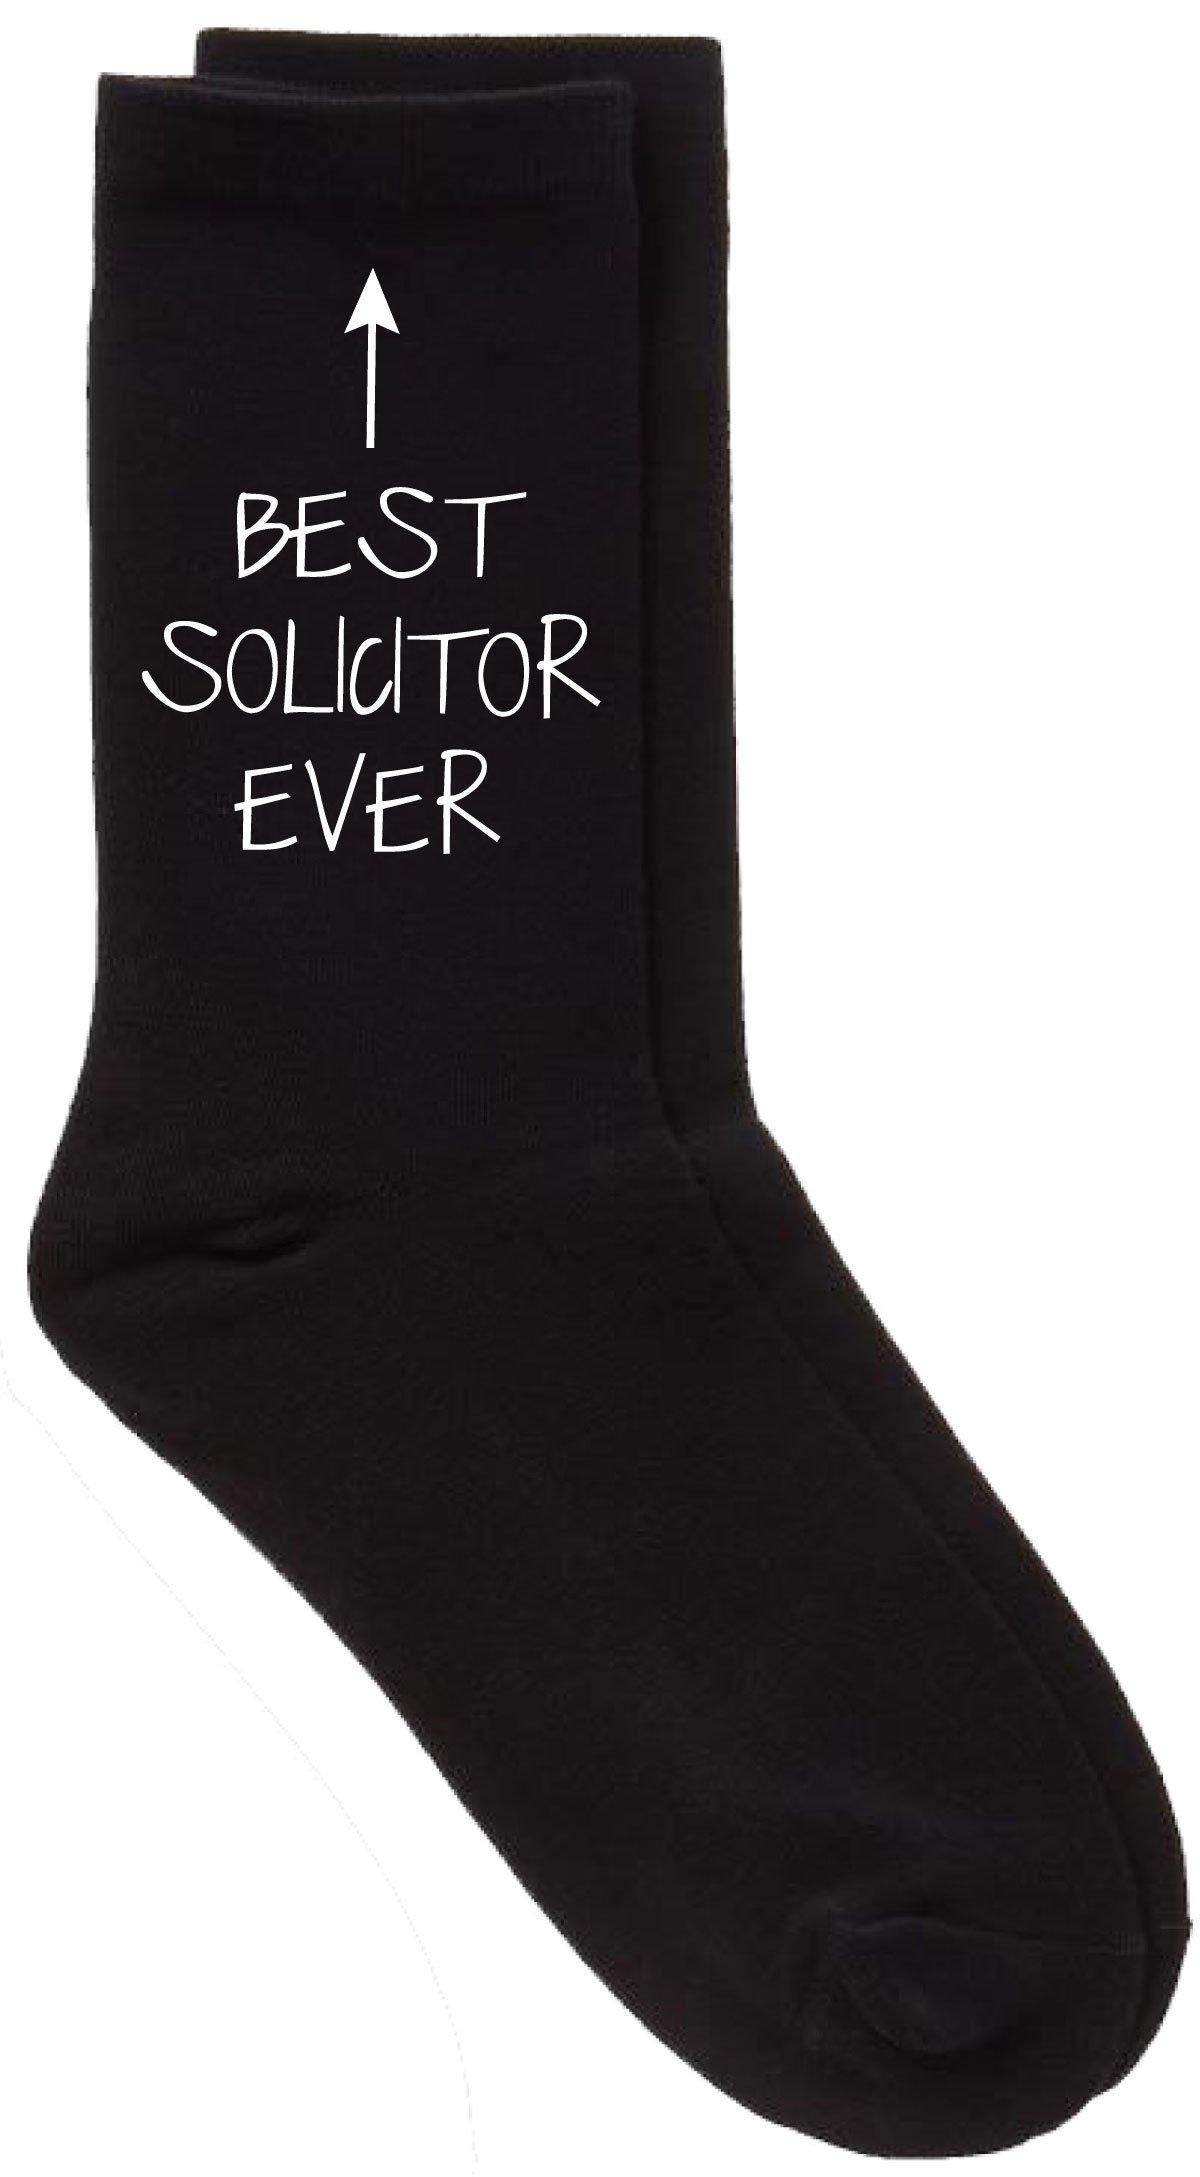 Best Solicitor Ever Black Calf Socks